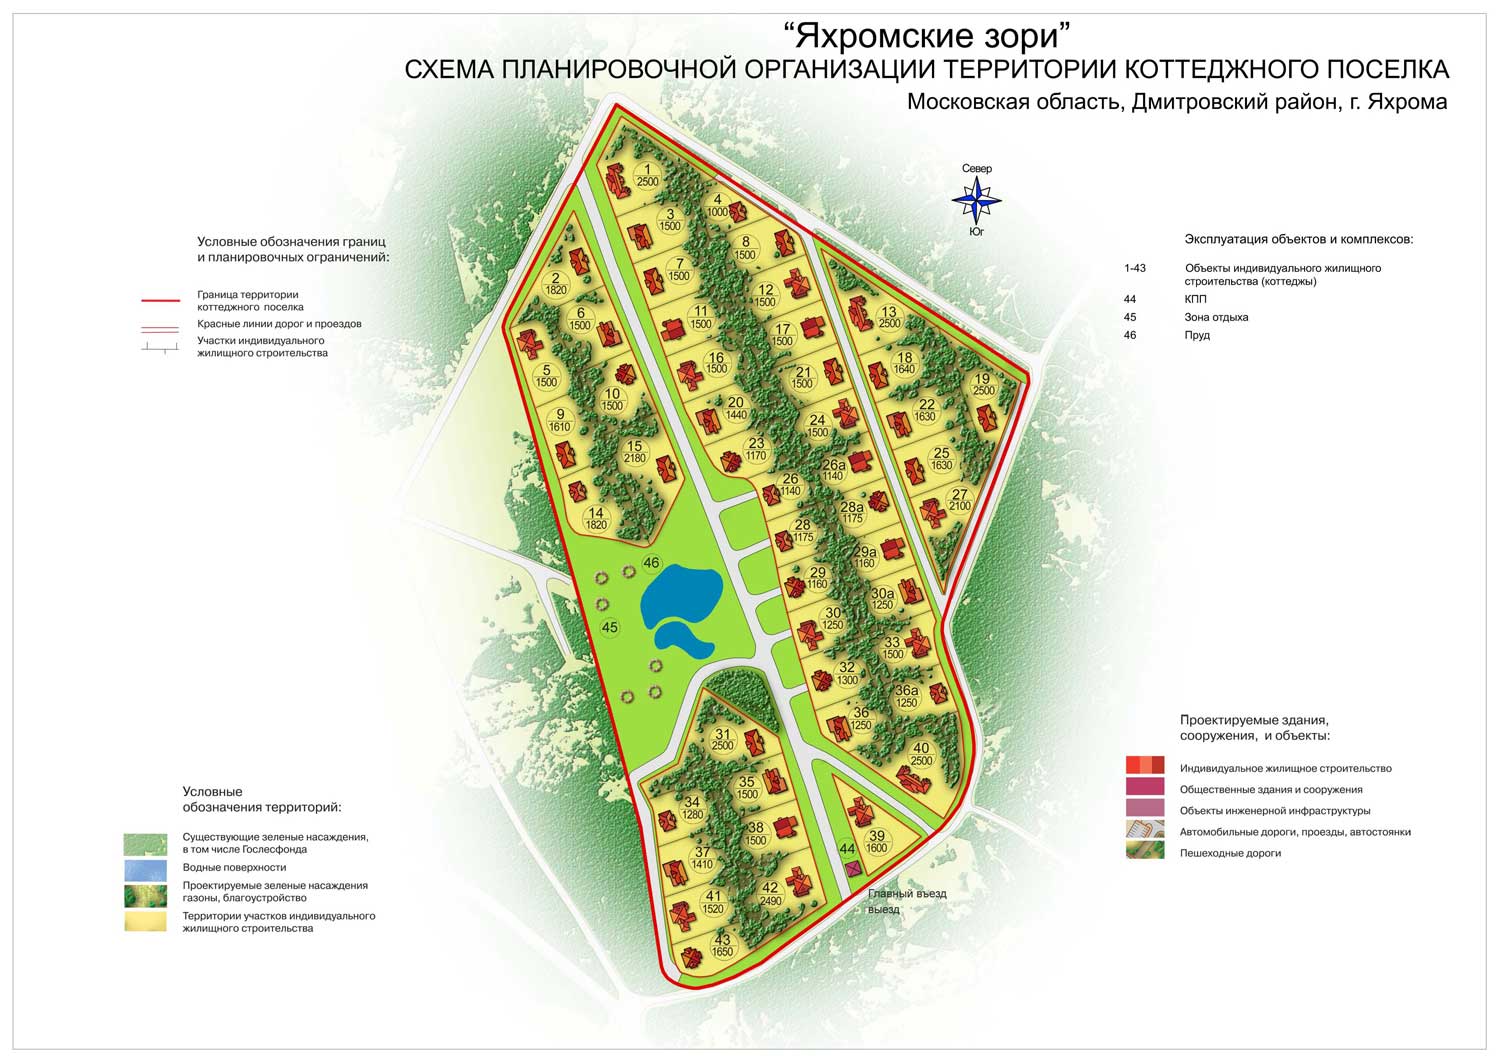 Коттеджный поселок Яхромские зори расположен на живописной поляне в окружении леса, образующего естественную рекреационную зону